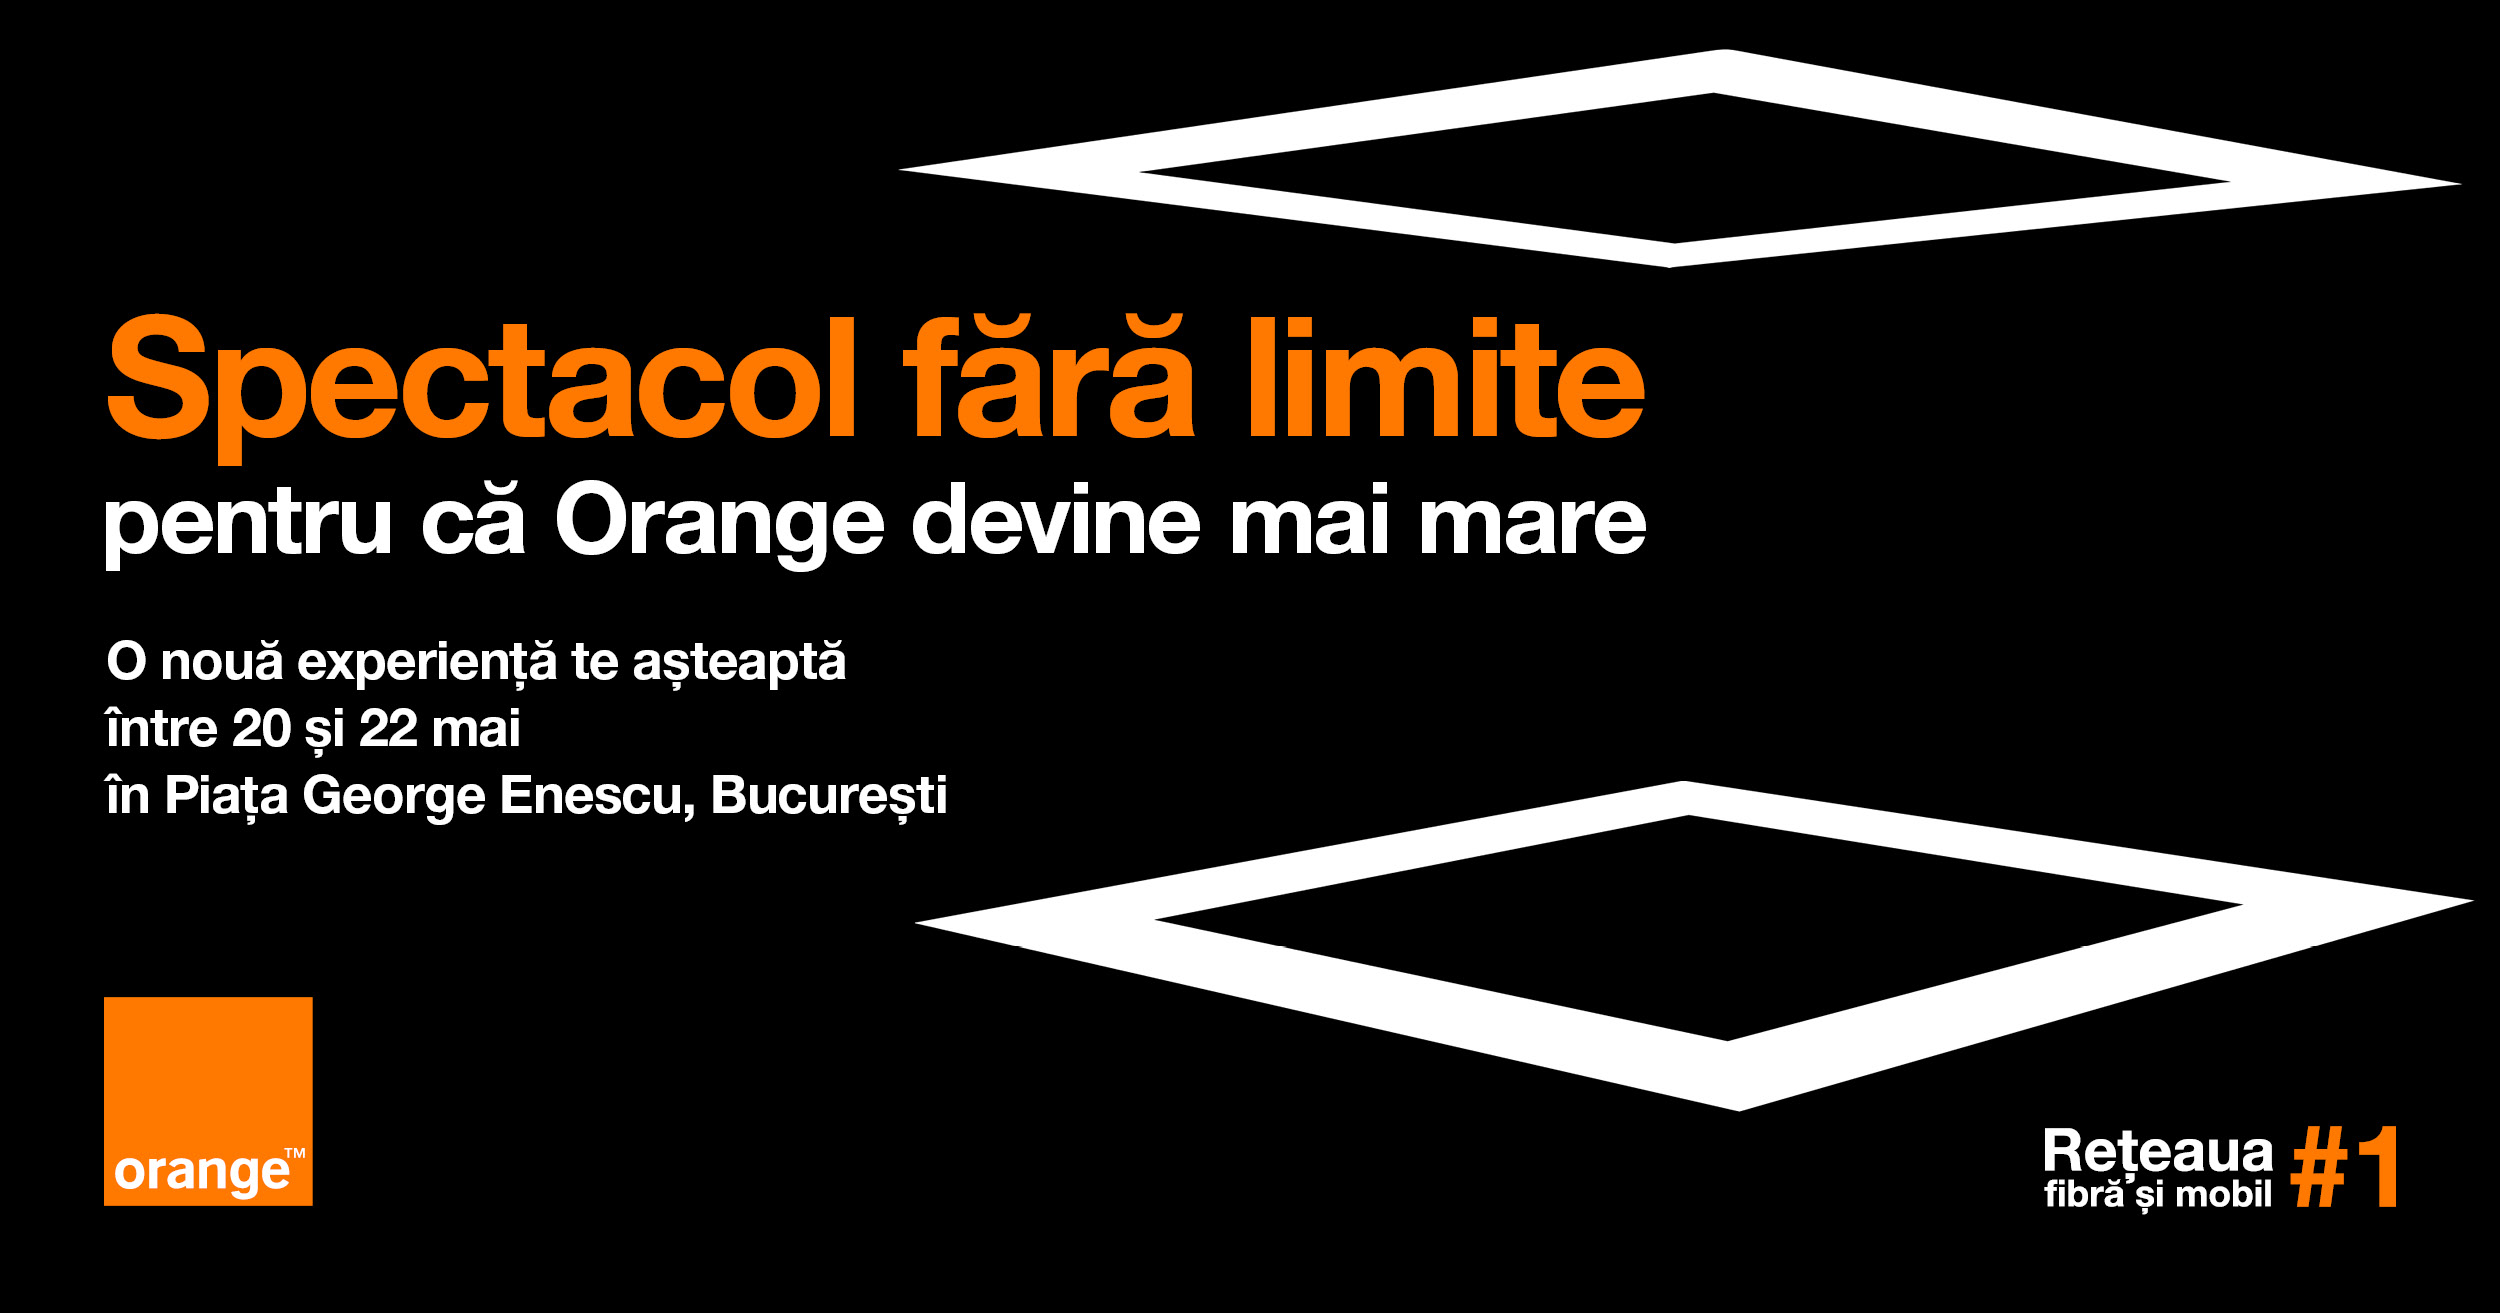 Orange România îmbină inovația și arta într-un show inedit în Piața George Enescu  din București, 20-22 mai